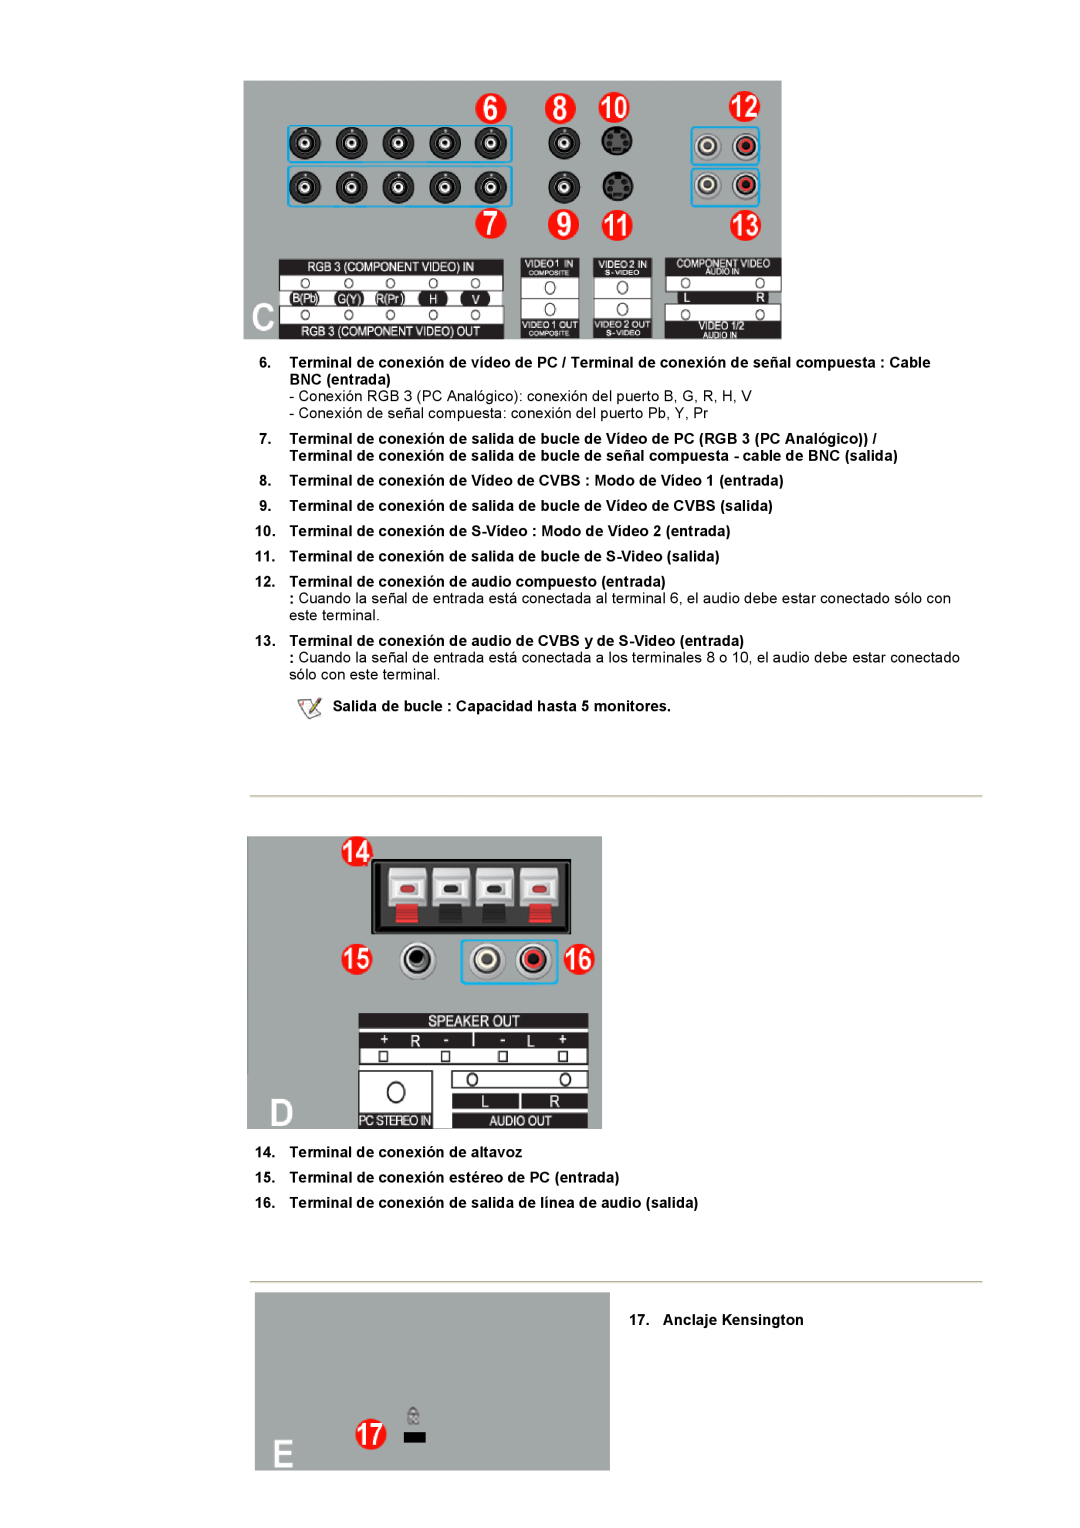 Samsung CK40BSNS/EDC manual Terminal de conexión de Vídeo de CVBS Modo de Vídeo 1 entrada, Terminal de conexión de altavoz 